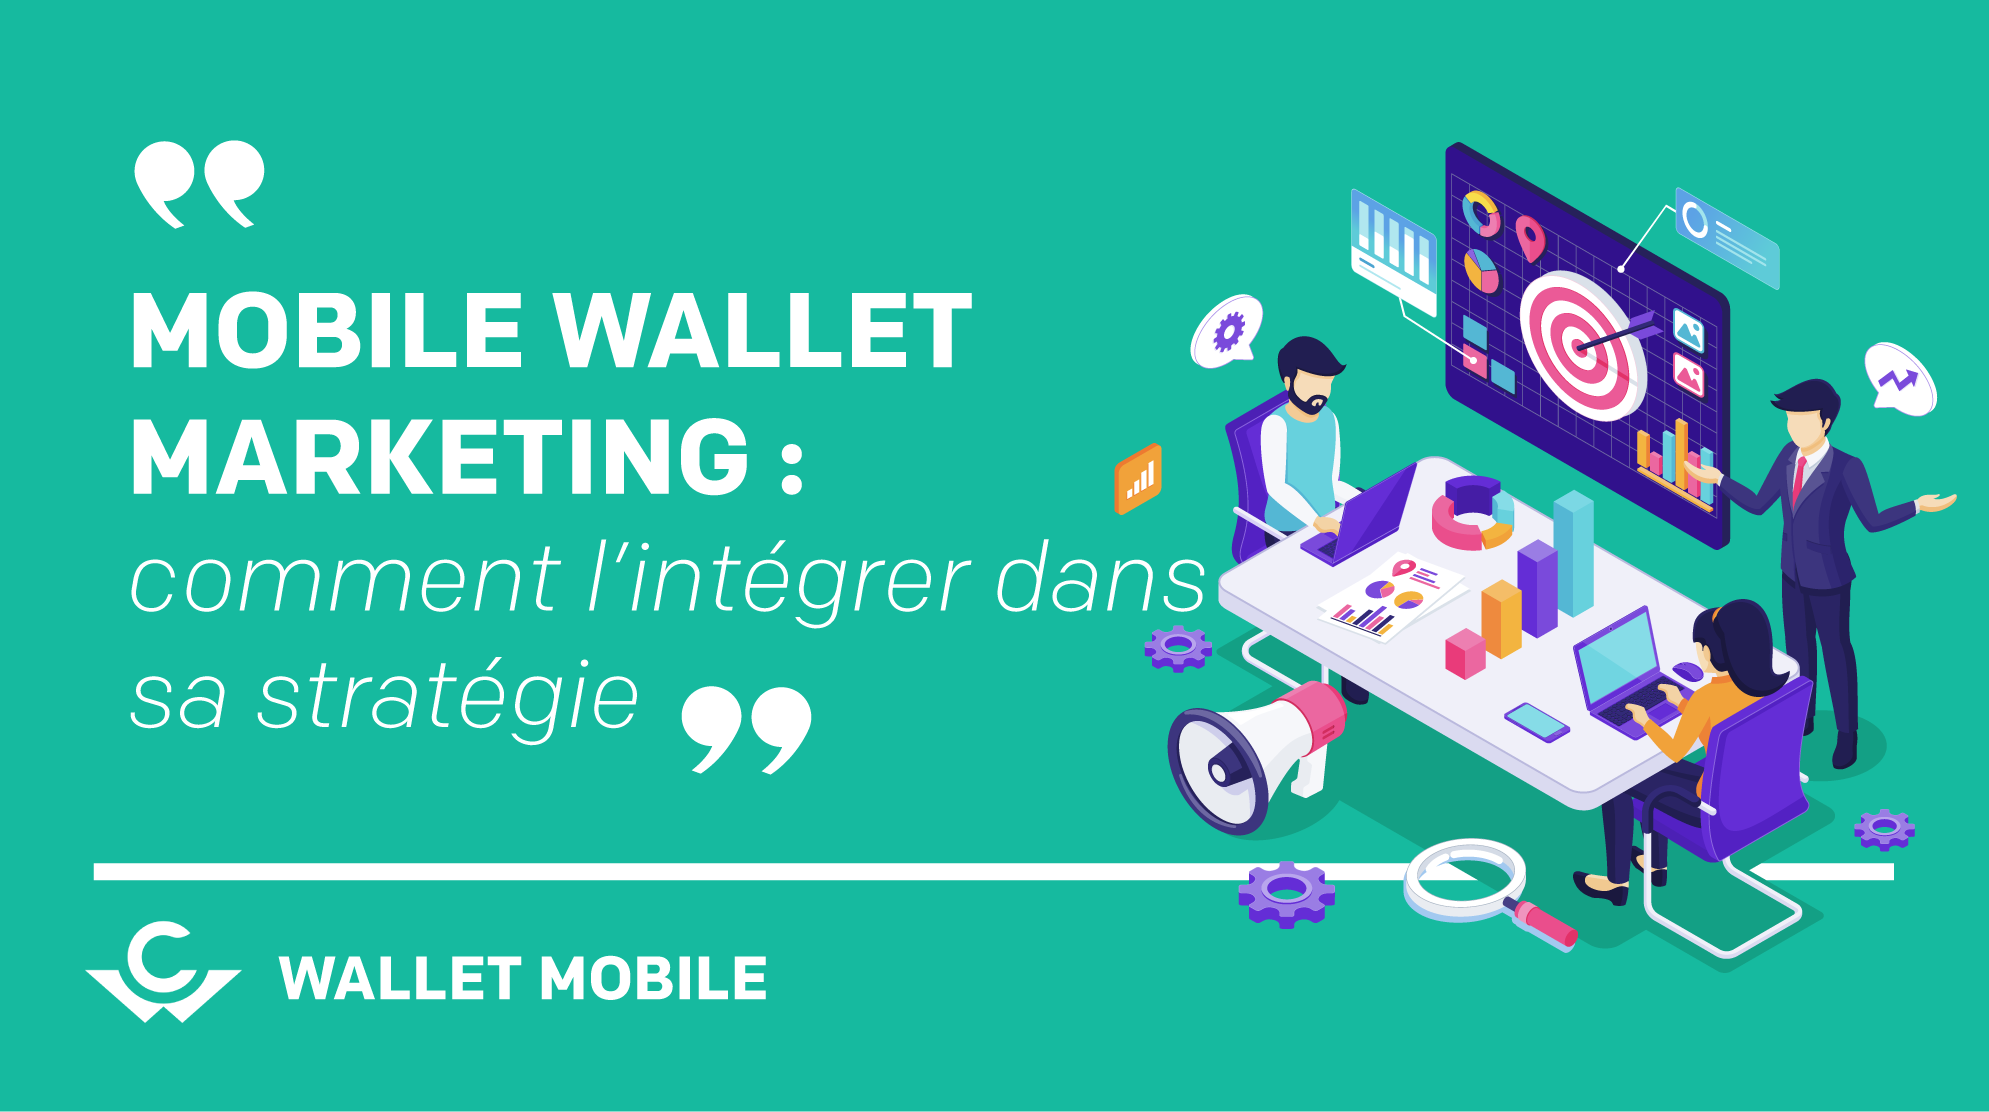 Mobile wallet marketing : comment l'intégrer dans votre stratégie 